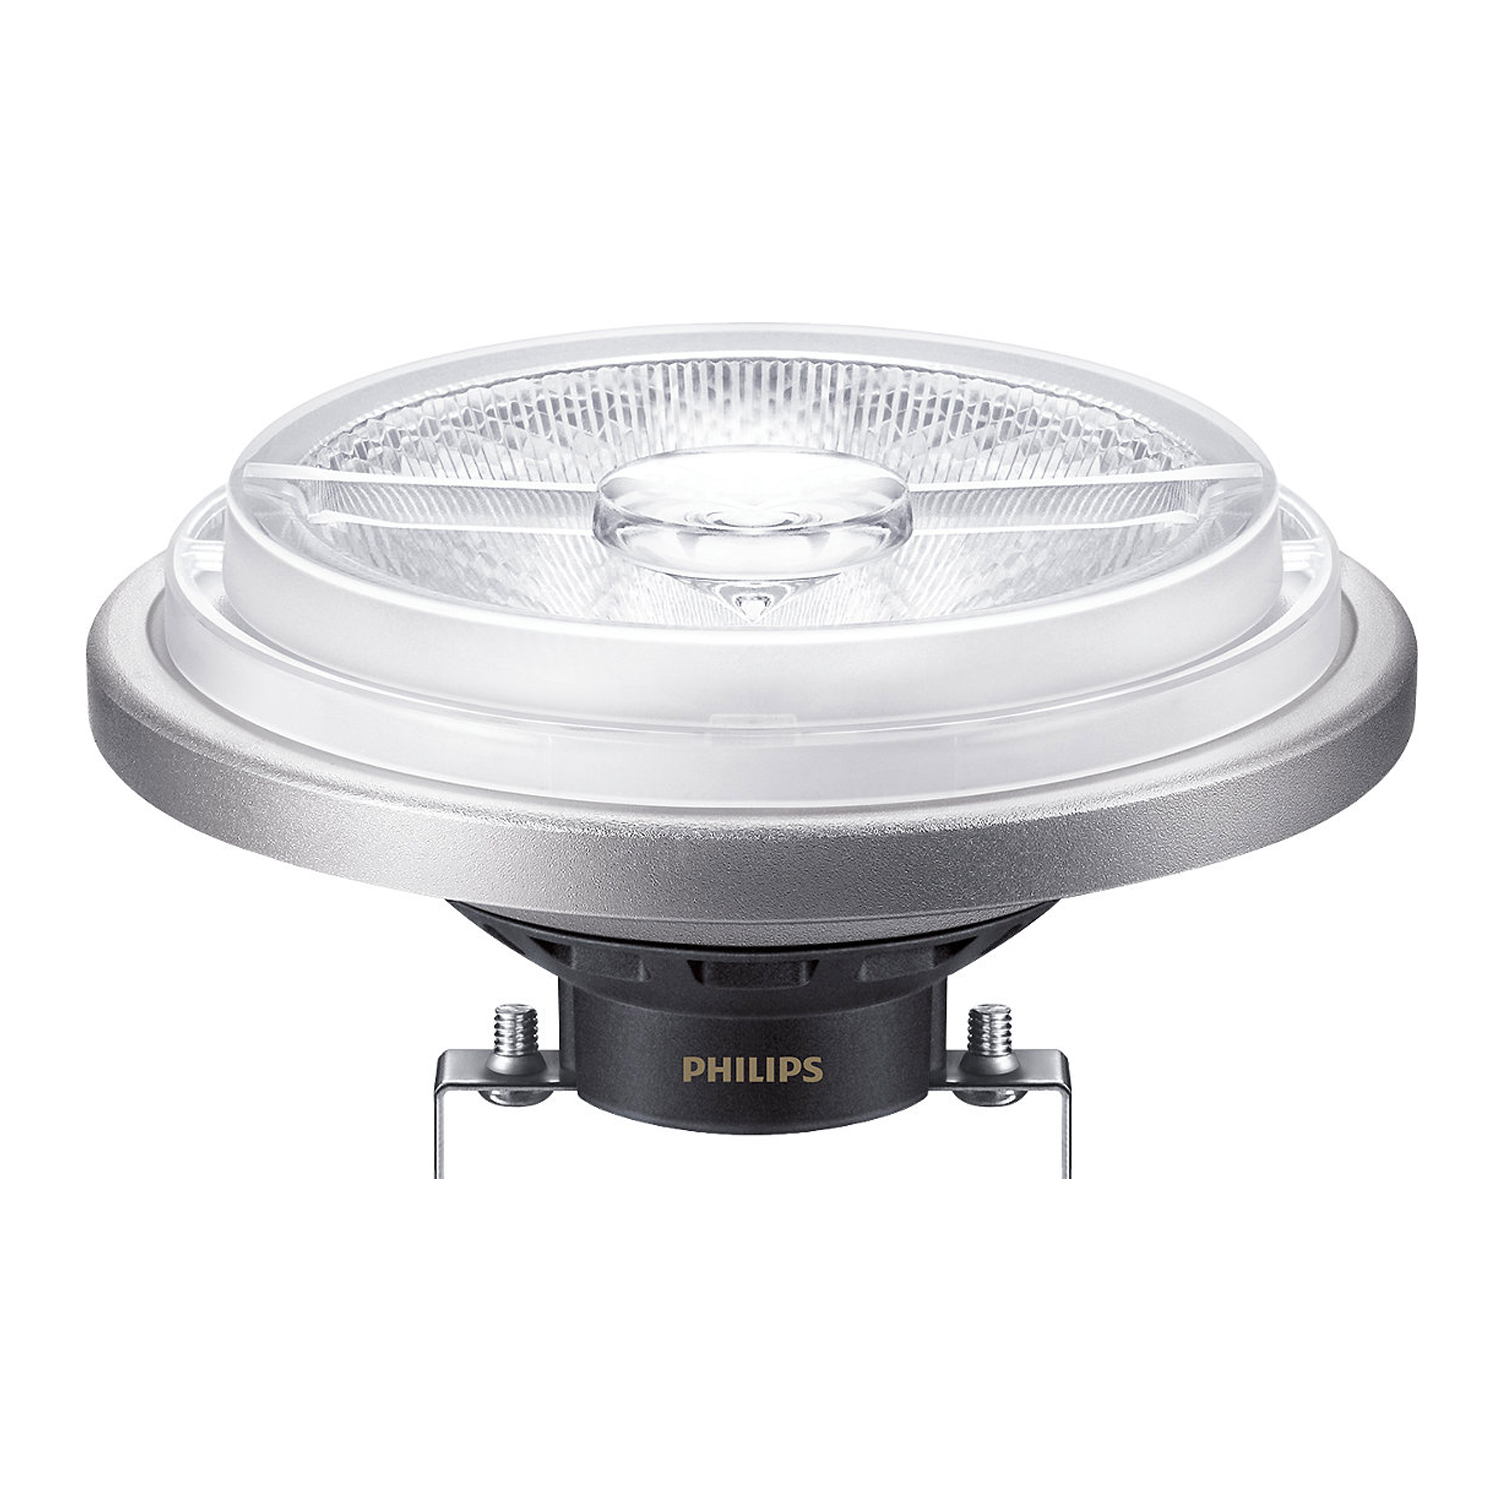 Philips LEDspotLV G53 AR111 (MASTER) 20W 927 45D | Dimbaar - Hoogste Kleurweergave - Vervanger voor 100W